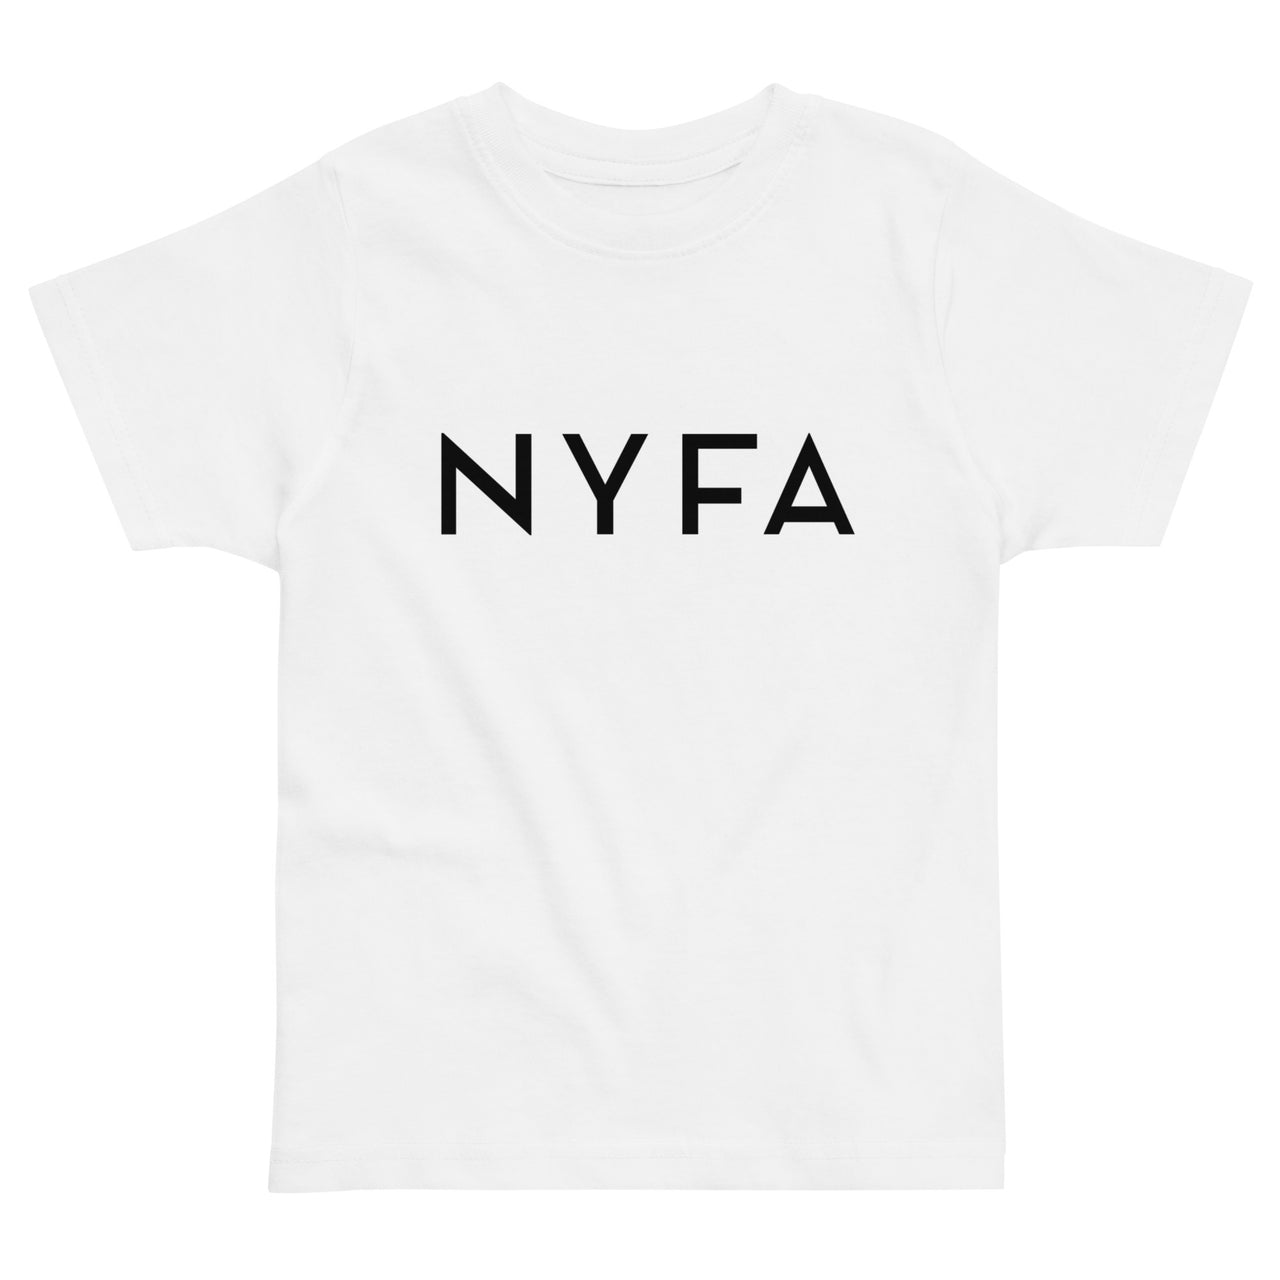 NYFA Kids Unisex T-shirt - White